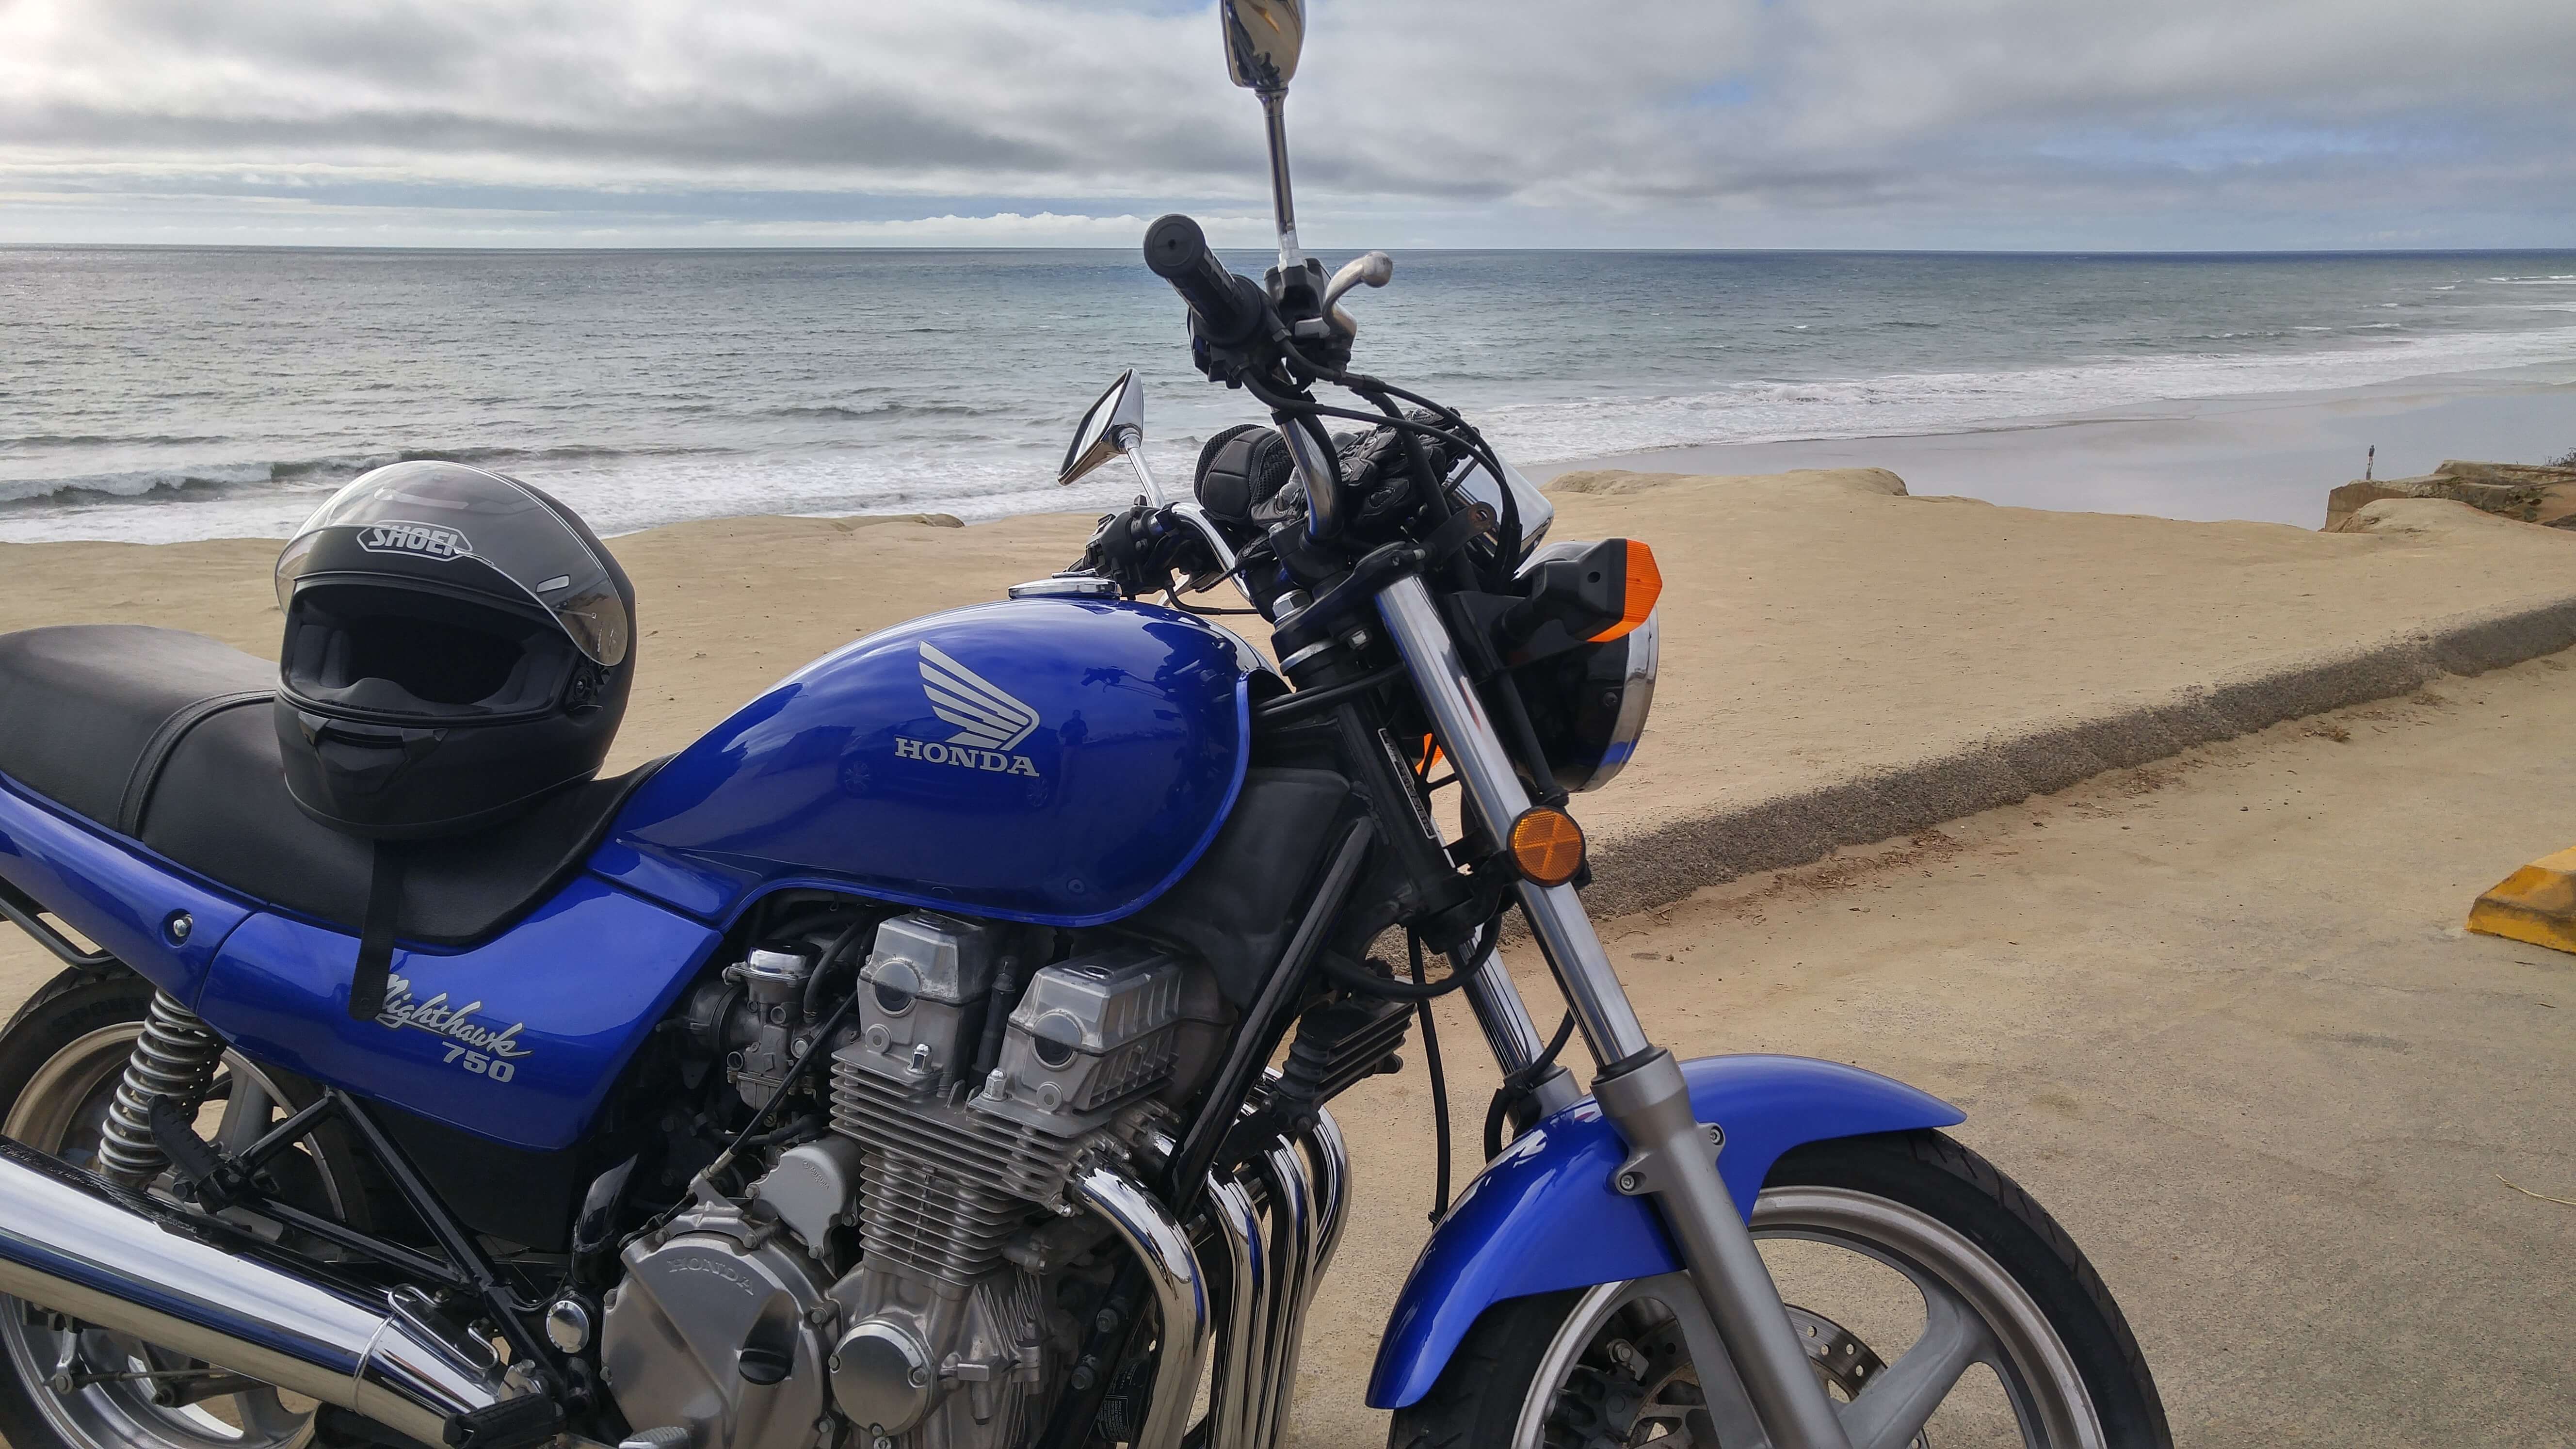 1993 Honda Nighthawk motorcycle at a Southern California beach